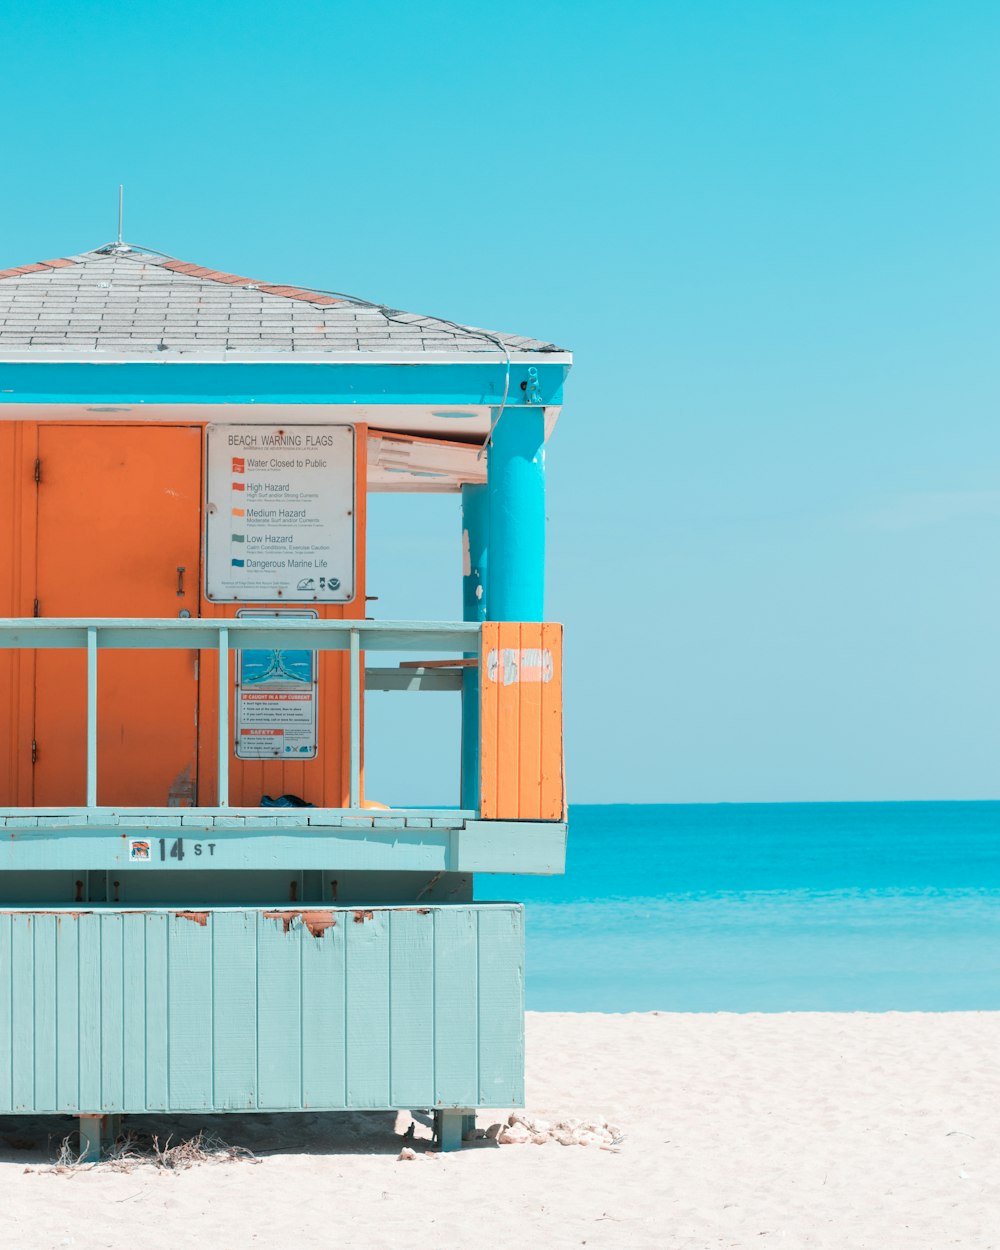 Maison turquoise, grise et orange près du bord de mer pendant la journée